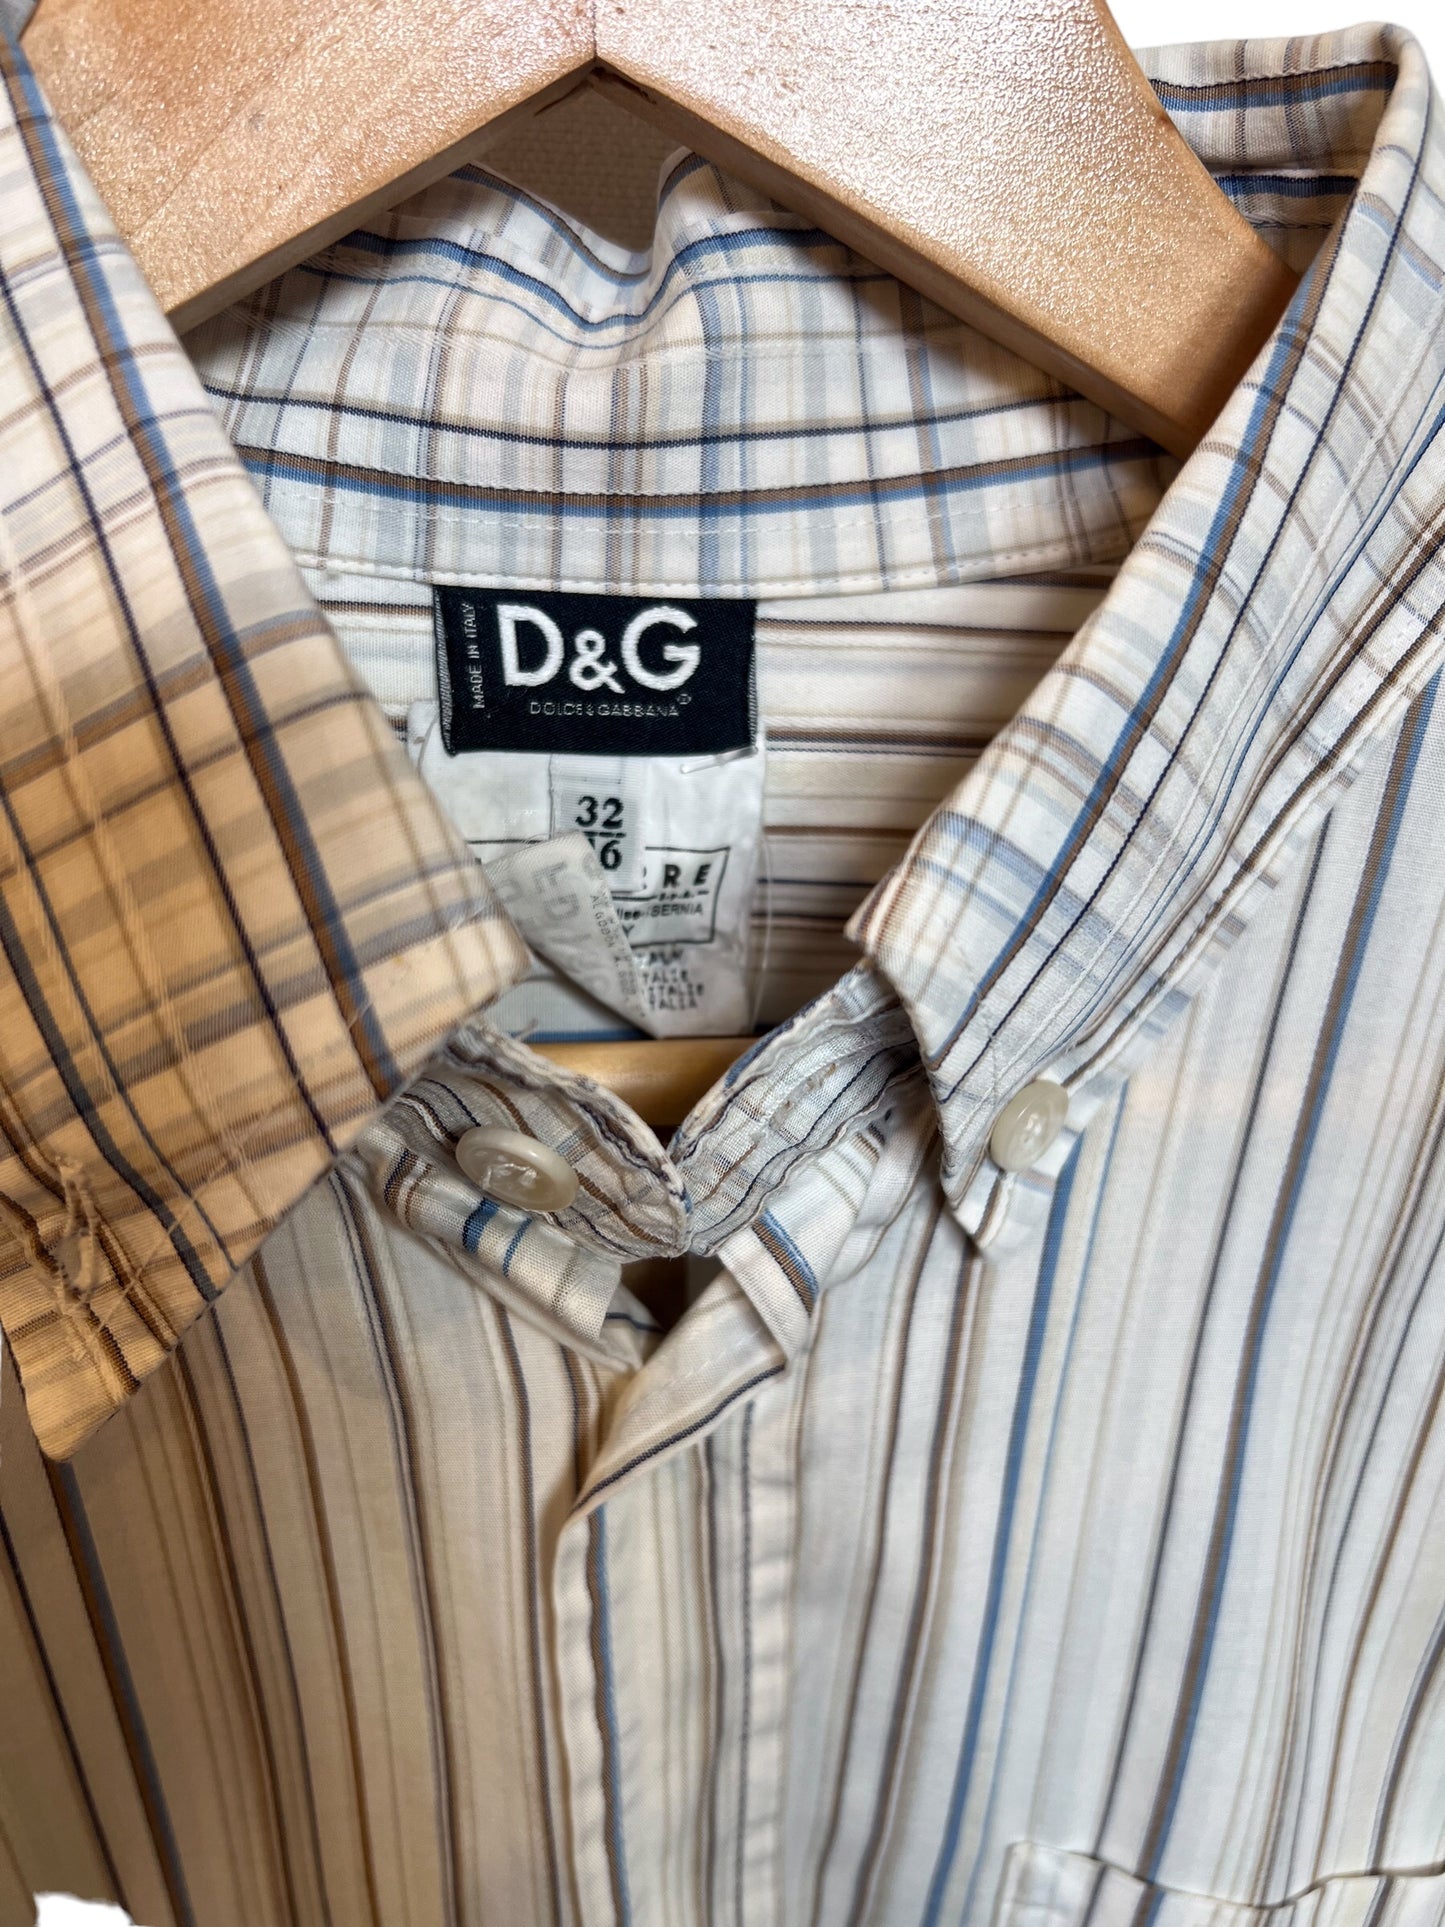 D&G Mixed Pattern Long Sleeve Shirt (Size S)